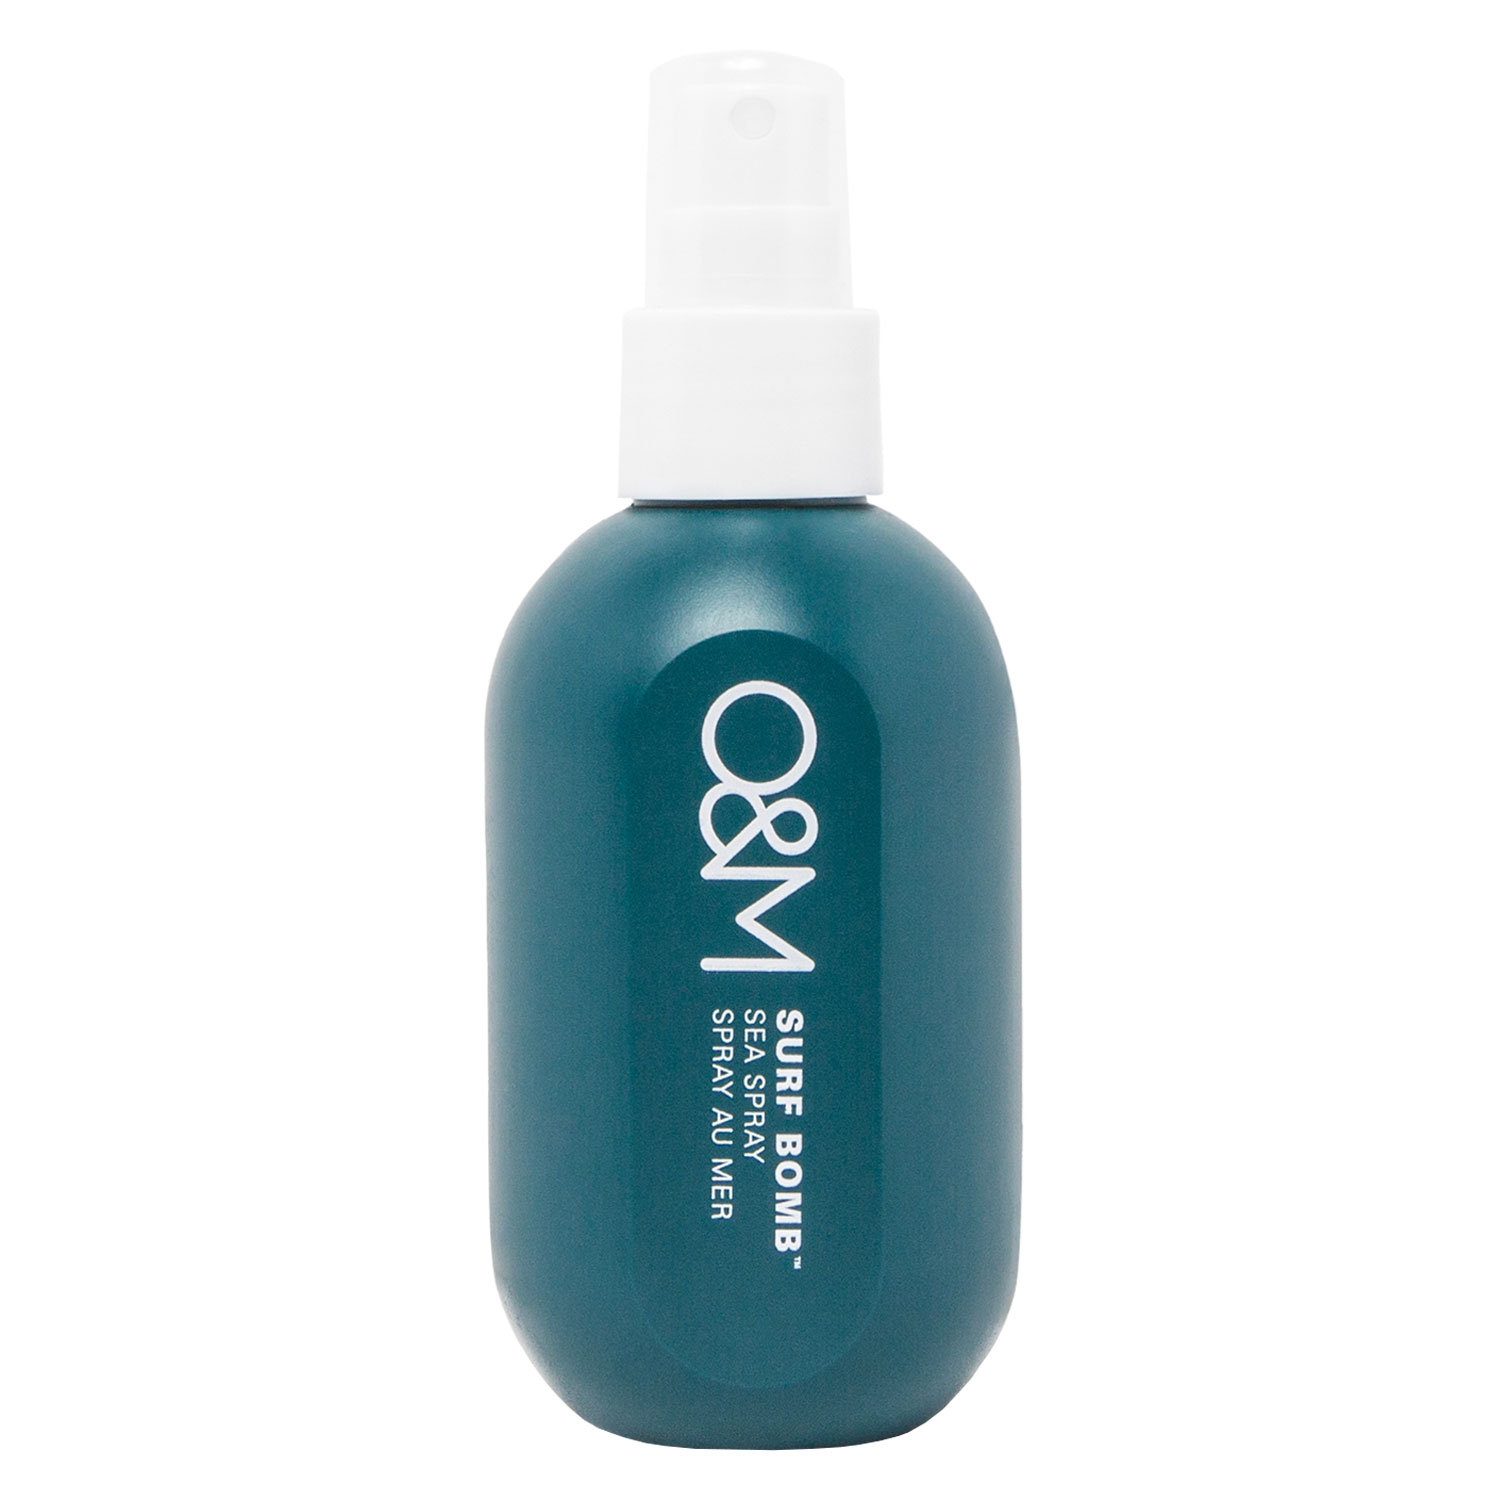 Produktbild von O&M Styling - Surf Bomb Sea Salt Spray